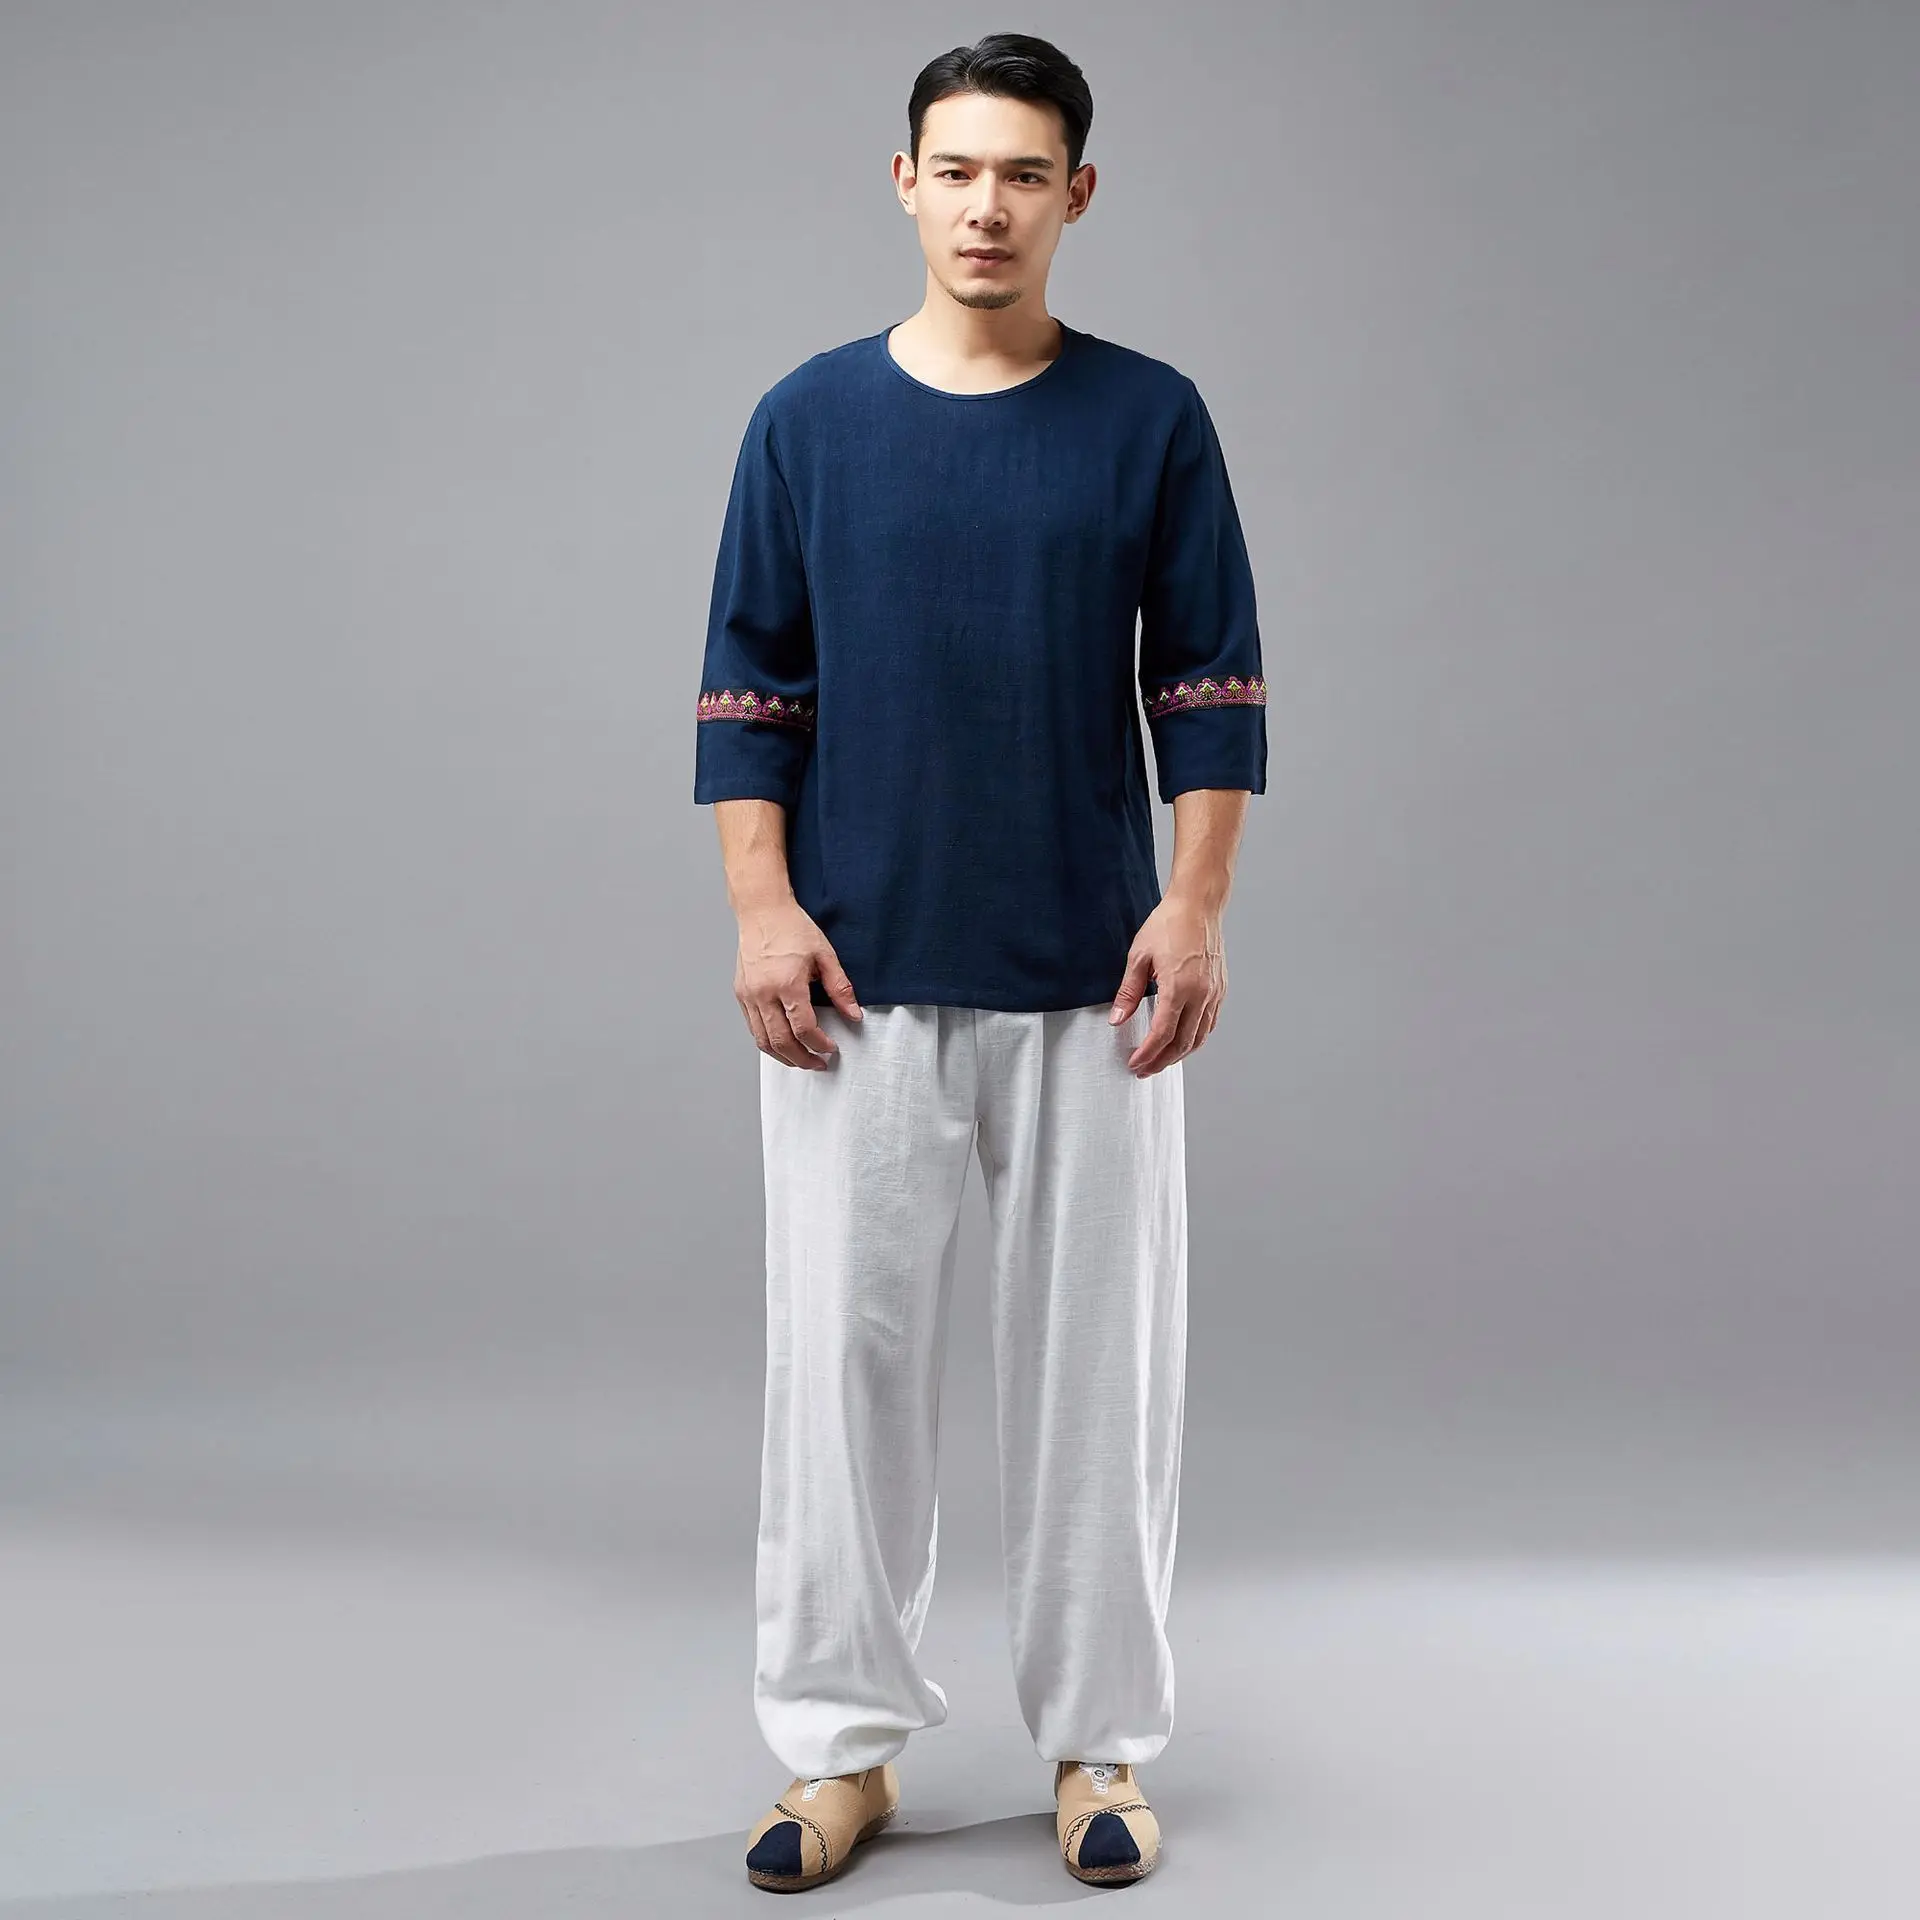 

Summer ma fan bu yi New Style Men Cotton Linen T-shirt Chinese National Clothing hua tiao Short Sleeve